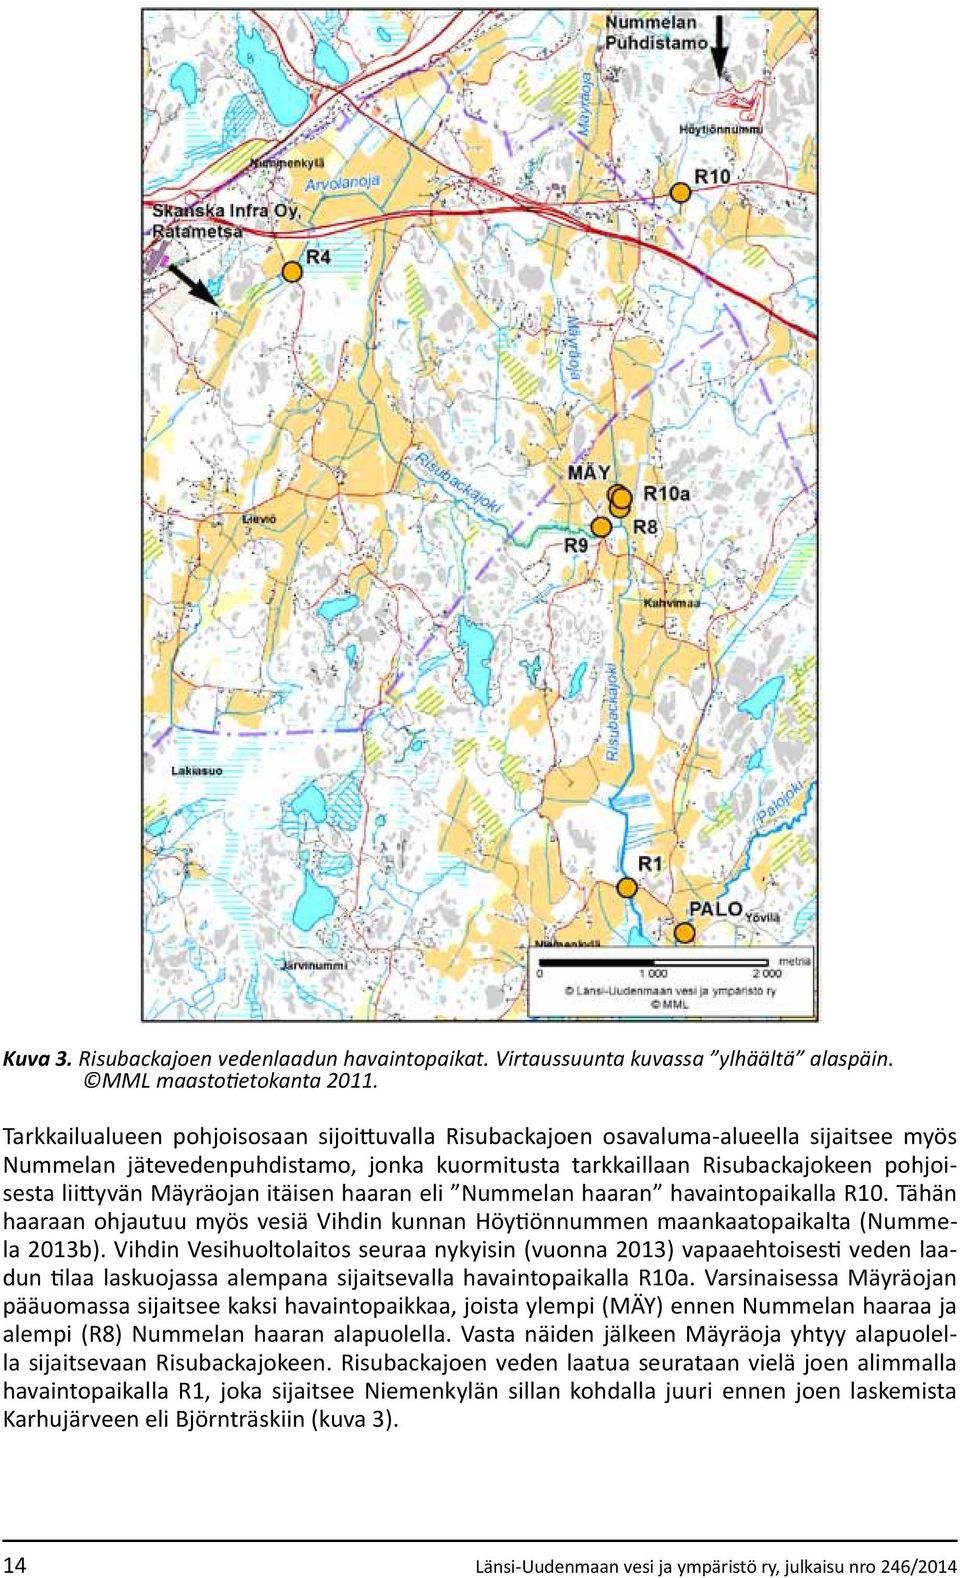 itäisen haaran eli Nummelan haaran havaintopaikalla R10. Tähän haaraan ohjautuu myös vesiä Vihdin kunnan Höytiönnummen maankaatopaikalta (Nummela 2013b).